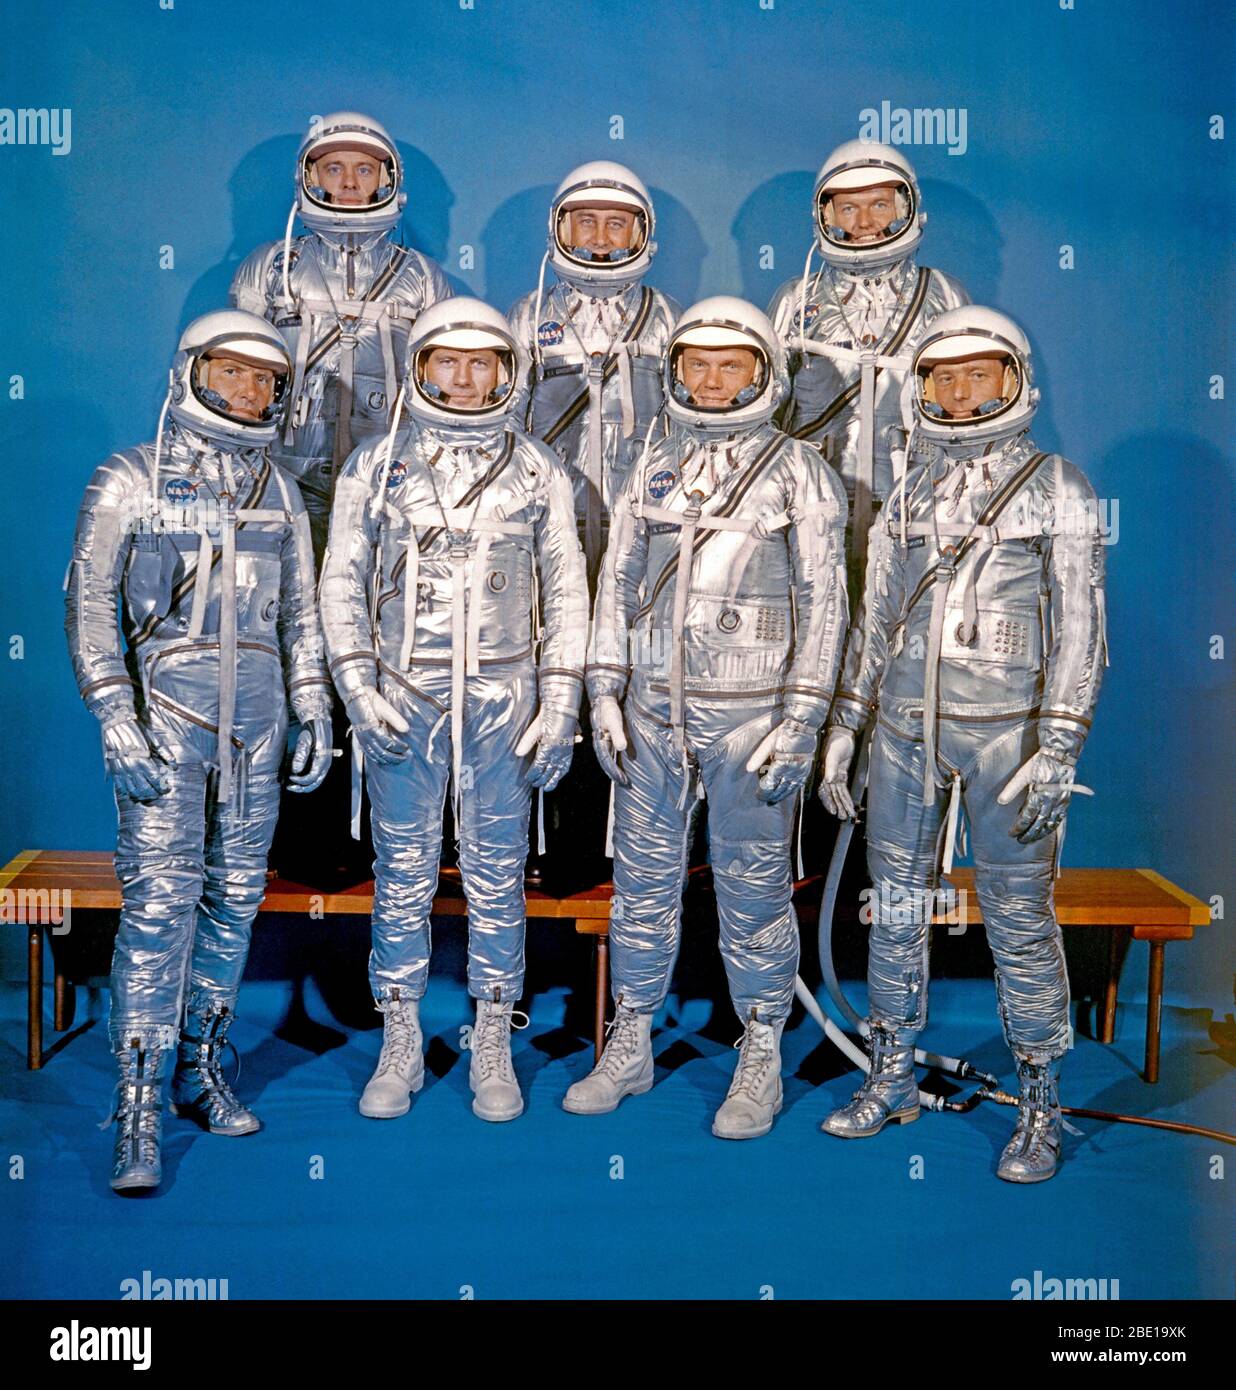 Diese sieben Männer, raumanzüge tragen in diesem Porträt, der aus der ersten Gruppe von Astronauten angekündigt durch das Nationale Luft- und Raumfahrtbehörde (NASA). Sie wurden im April 1959 für das Mercury Programm ausgewählt. Vordere Reihe von links nach rechts Walter M. Schirra Jr., Donald K. Slayton, John H. Glenn Jr., und M.Scott Carpenter. Hintere Reihe von links nach rechts sind Alan B. Shepard, Jr., Virgil Grissom I und L. Gordon Cooper jr. Stockfoto